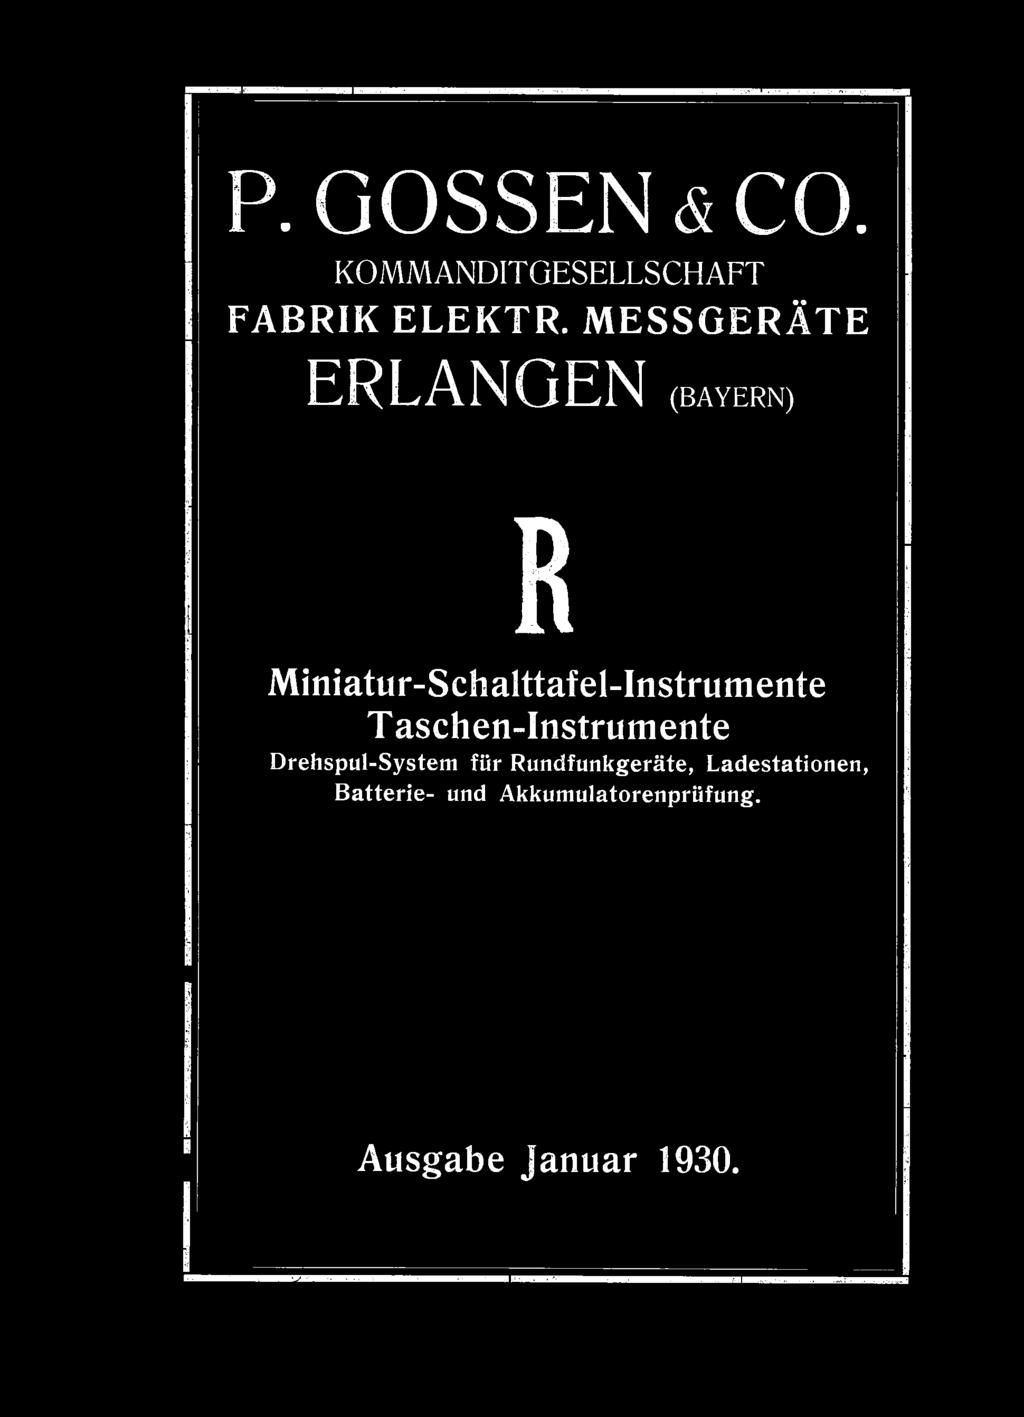 Miniatur-Schalttafel-Instrumente T aschen-instrumente